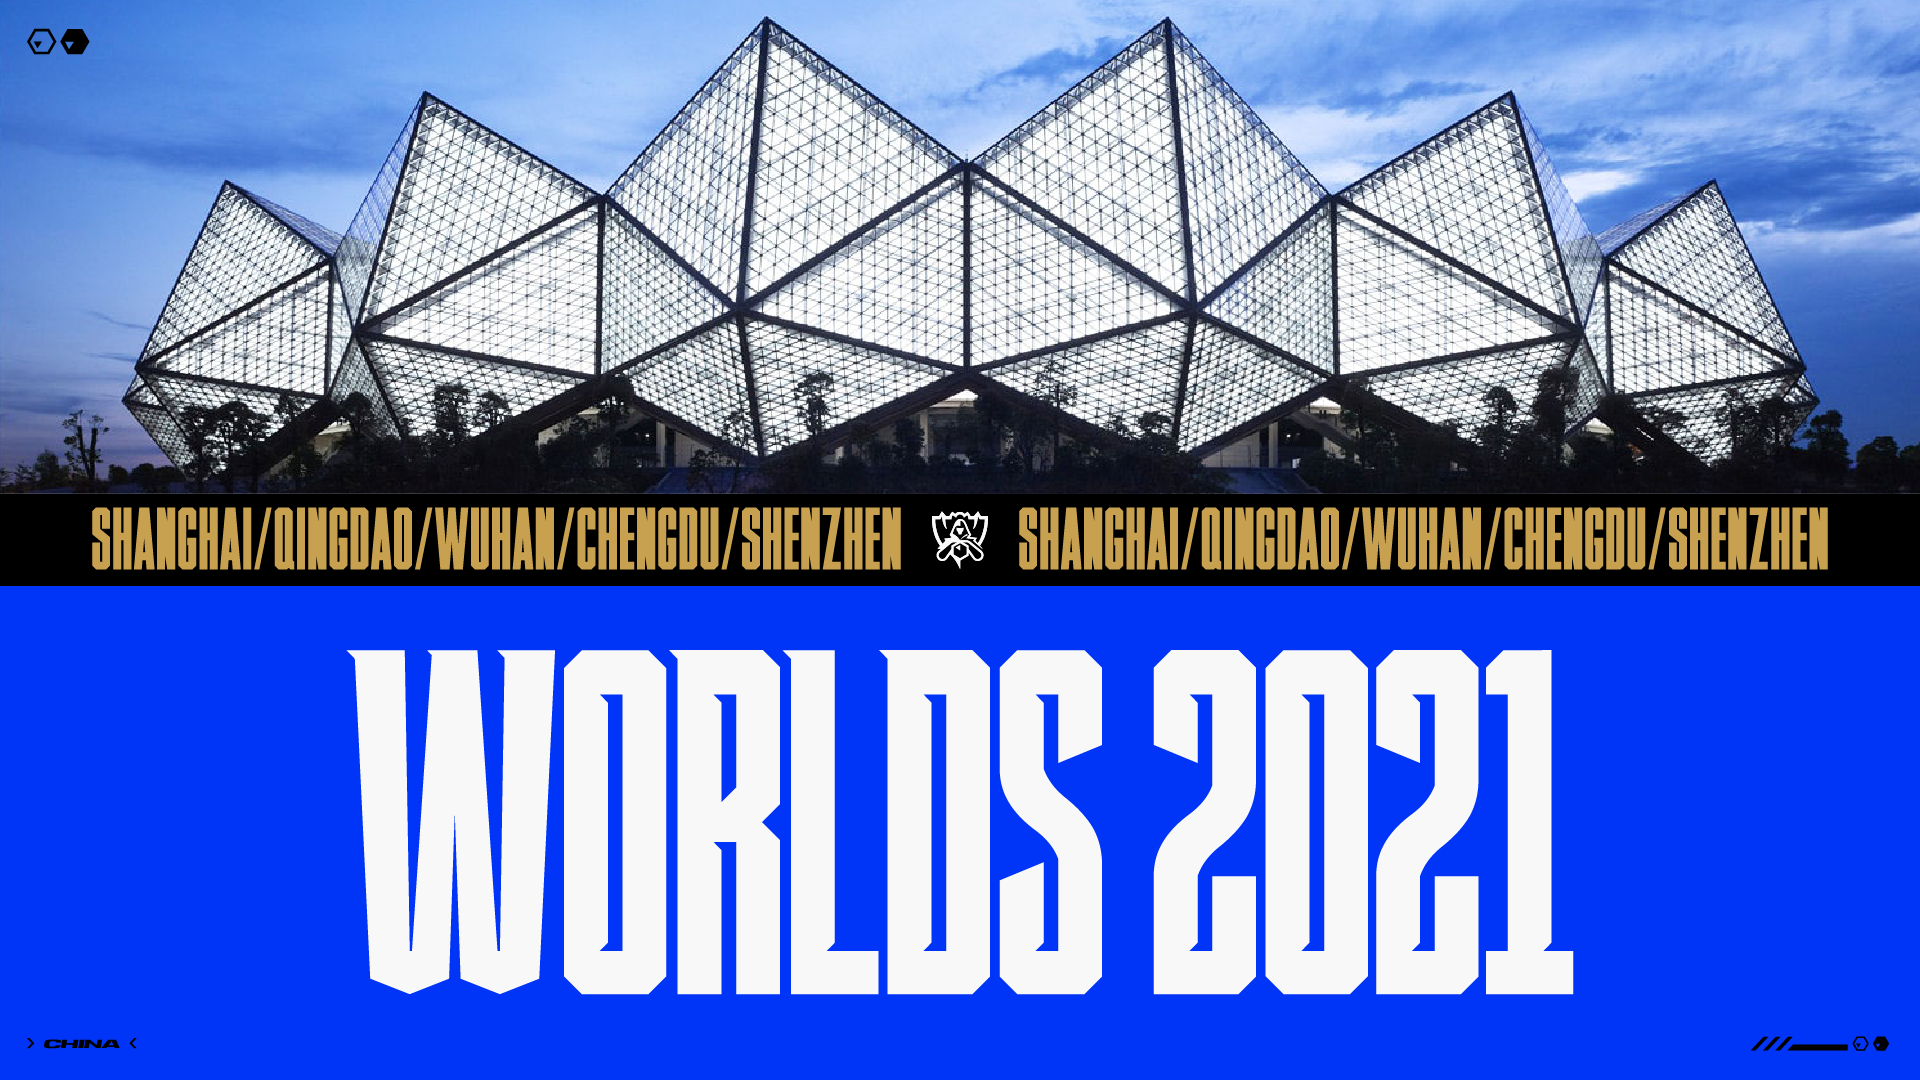 Les Worlds 2021 se dérouleront dans cinq villes chinoises